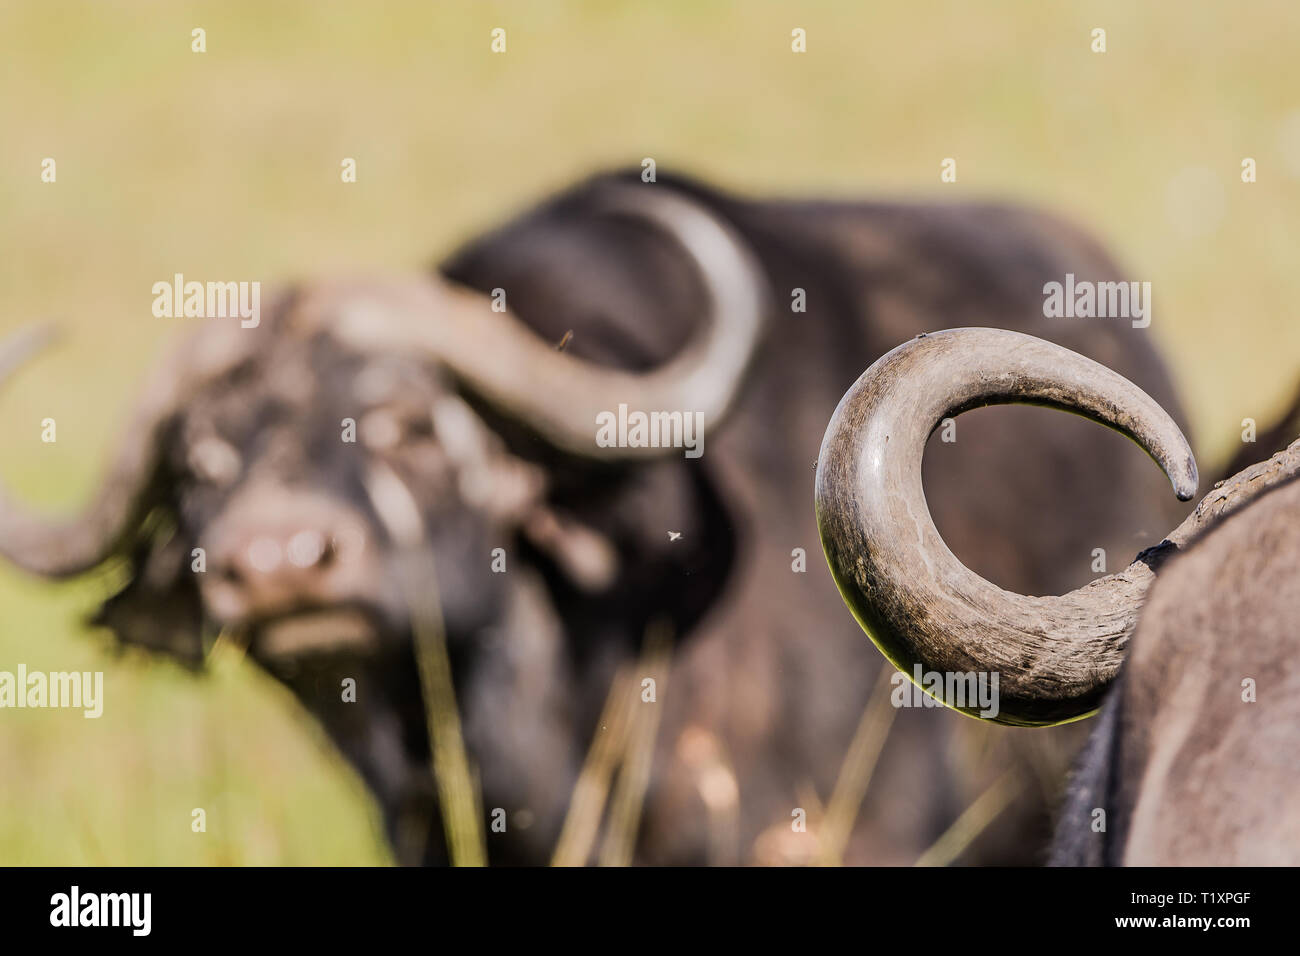 Un búfalo con cuernos en el fondo Foto de stock